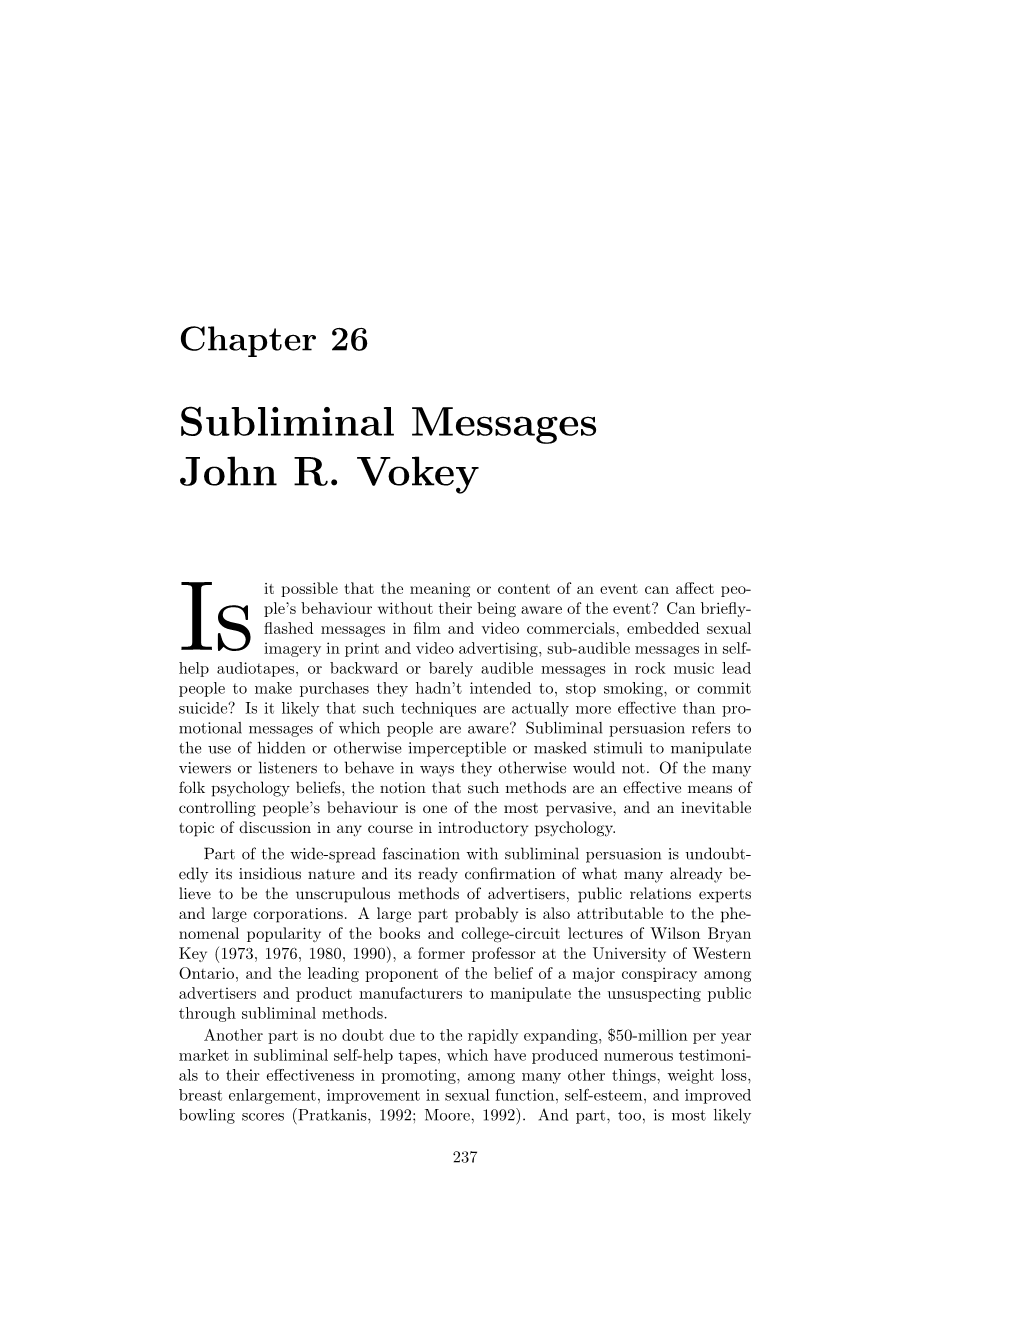 Subliminal Messages John R